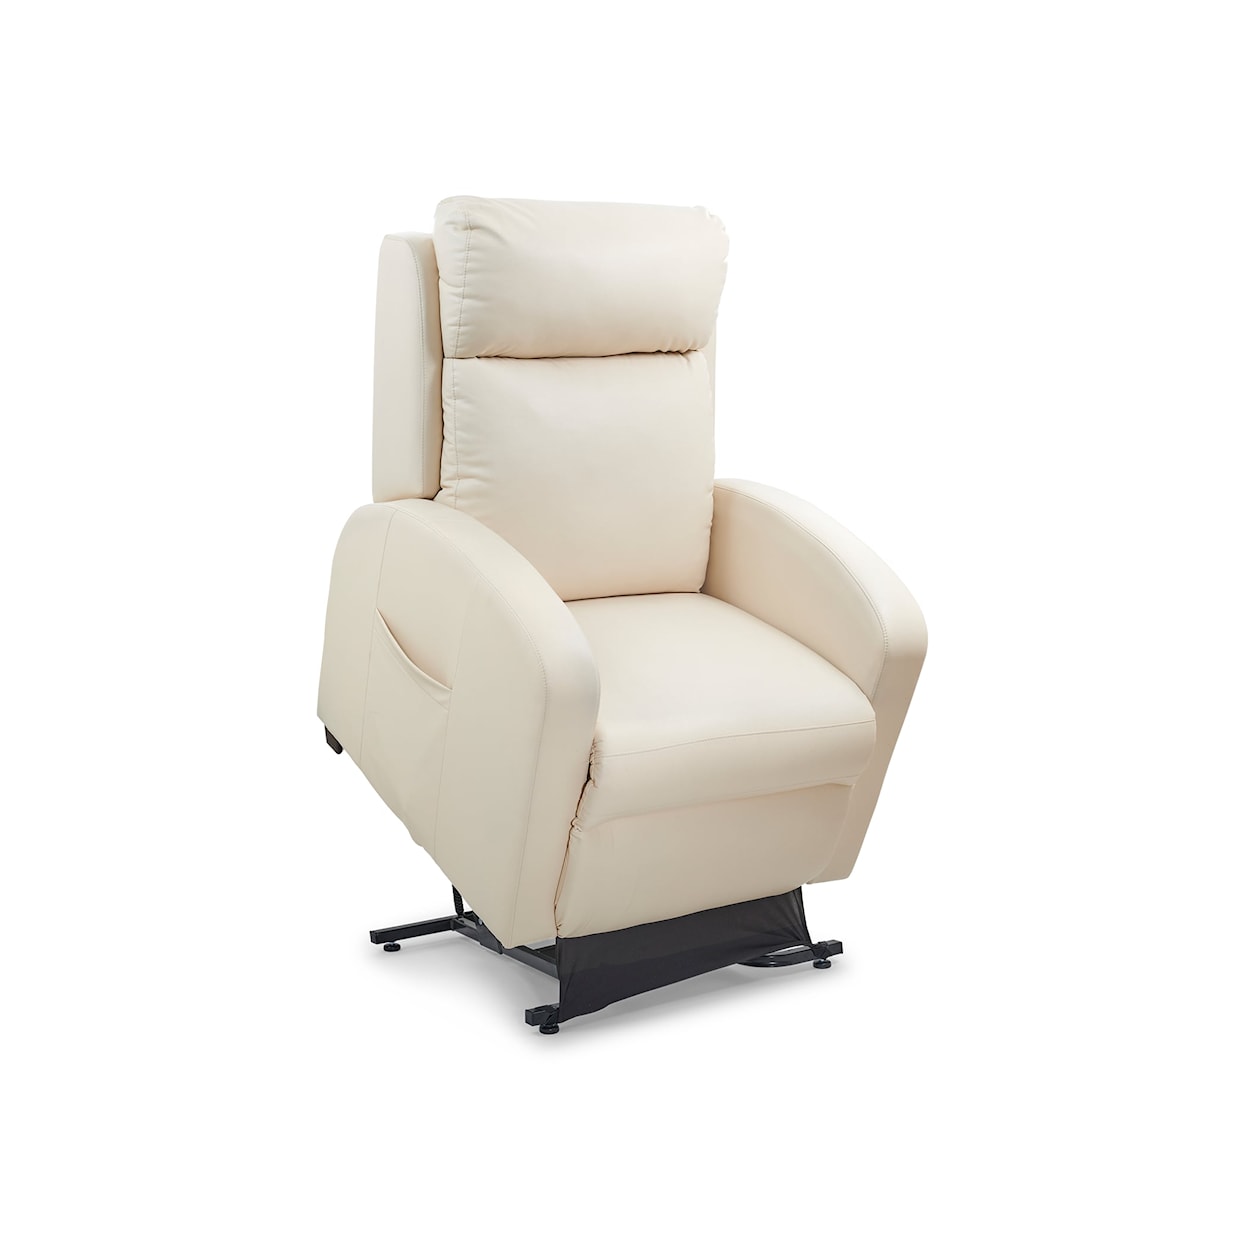 UltraComfort Capella Lift Recliner Chair